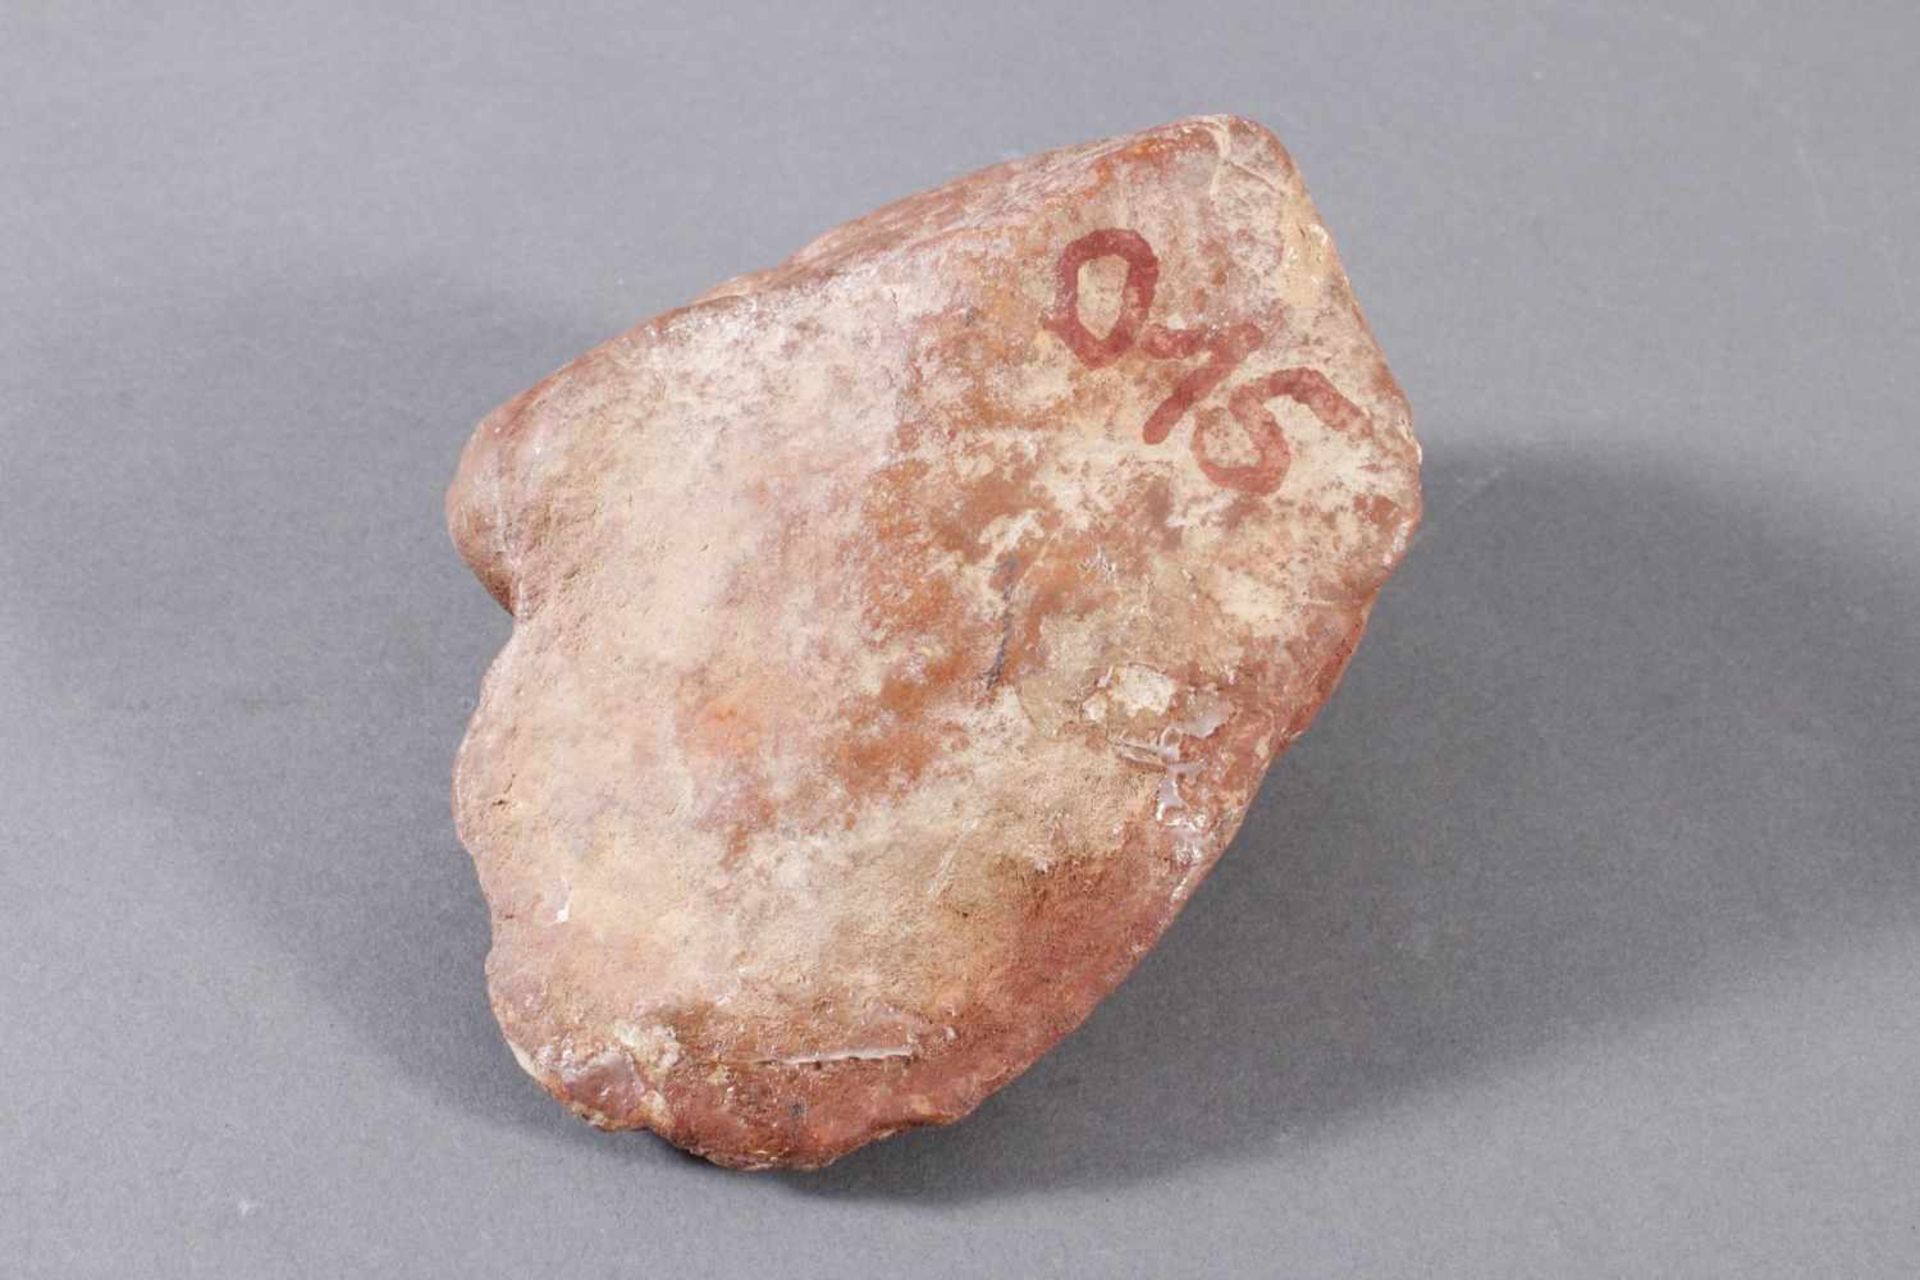 Pferdekopf-FragmentAus Stein gehauen, farbig gefasst, ca. 10,5 x 12 x 15 cm, 1320 g. - Bild 5 aus 6